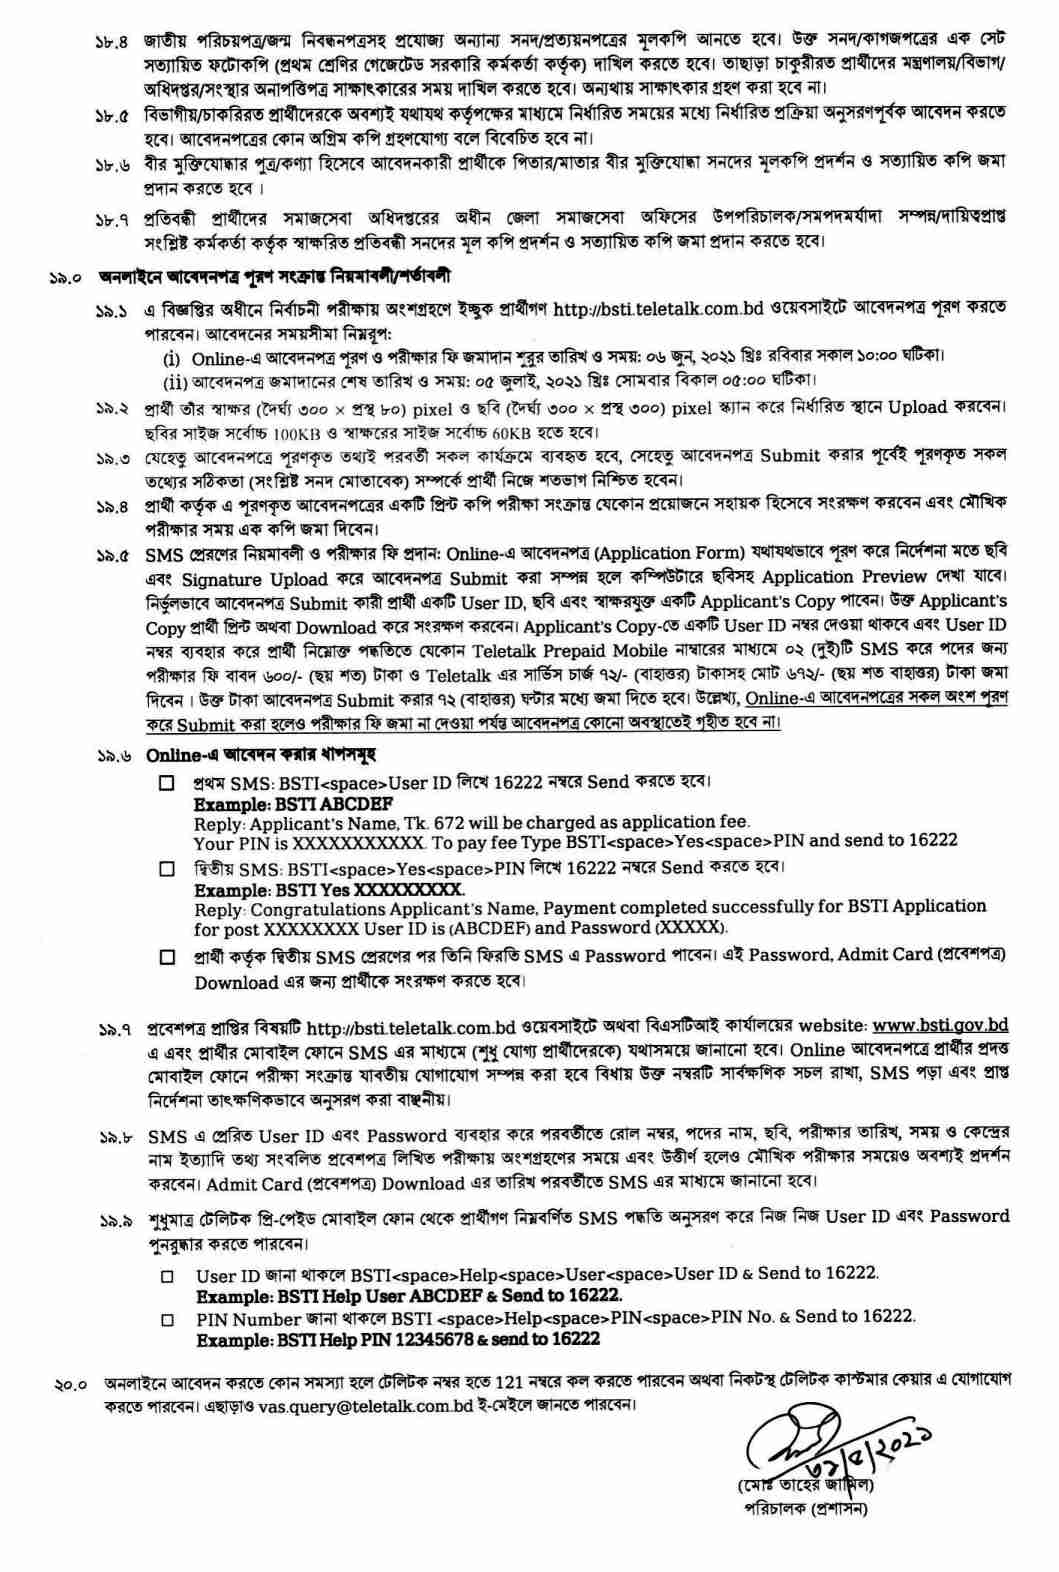 বাংলাদেশ স্ট্যান্ডার্ডস এন্ড টেস্টিং ইনস্টিটিউশন নিয়োগ বিজ্ঞপ্তি ২০২১, Bsti নিয়োগ বিজ্ঞপ্তি, বিএসটিআই নিয়োগ ২০২১, Bangladesh Standards and Testing Institution (BSTI) Job circular 2021, bsti job circular 2021